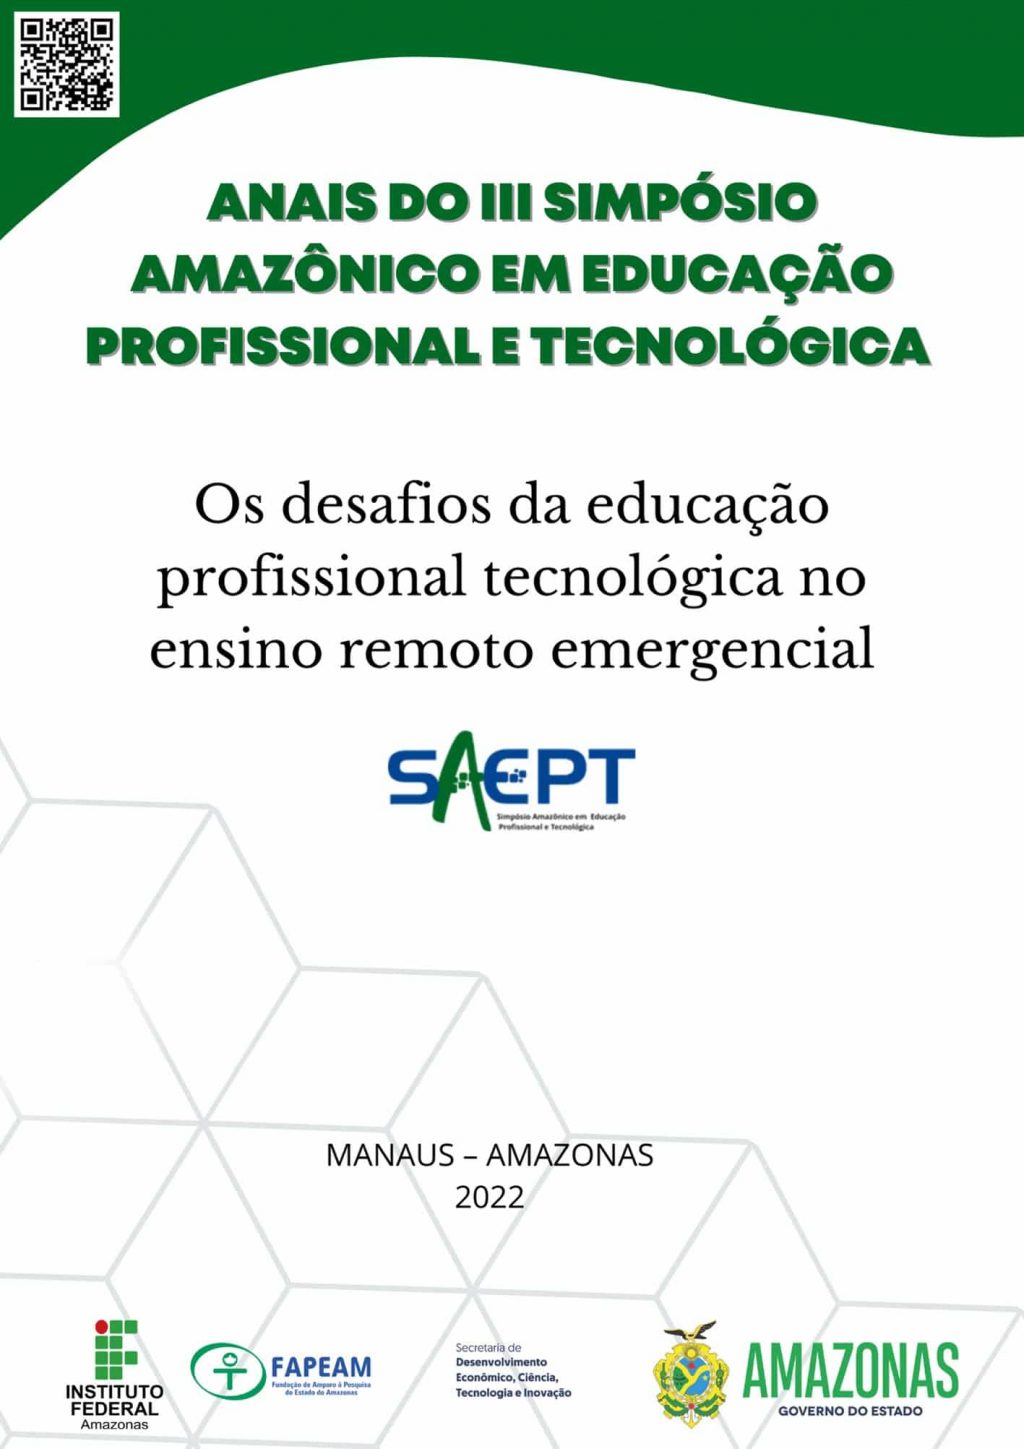 Anais dos III Simpósio Amazônico em Educação Profissional e Tecnológica